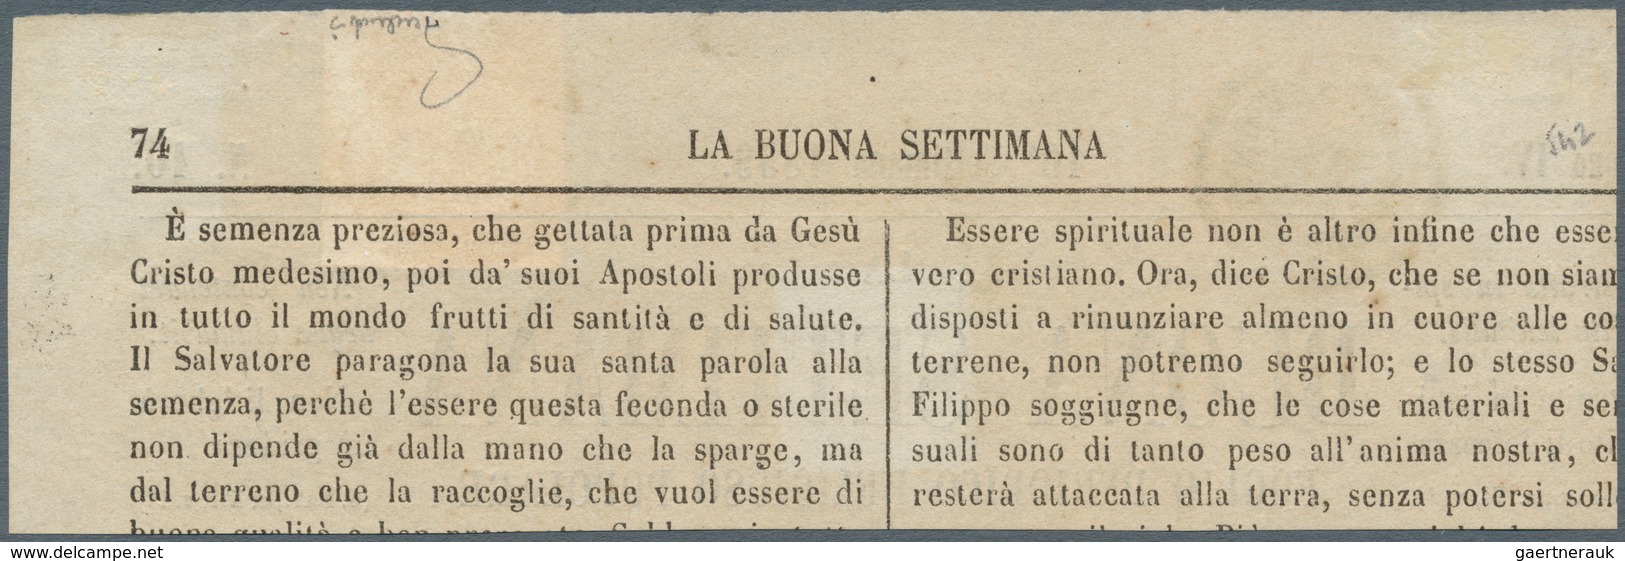 Österreich - Lombardei Und Venetien - Zeitungsstempelmarken: 1858, 4 Kreuzer Rot, Type I, Allseits B - Lombardo-Venetien